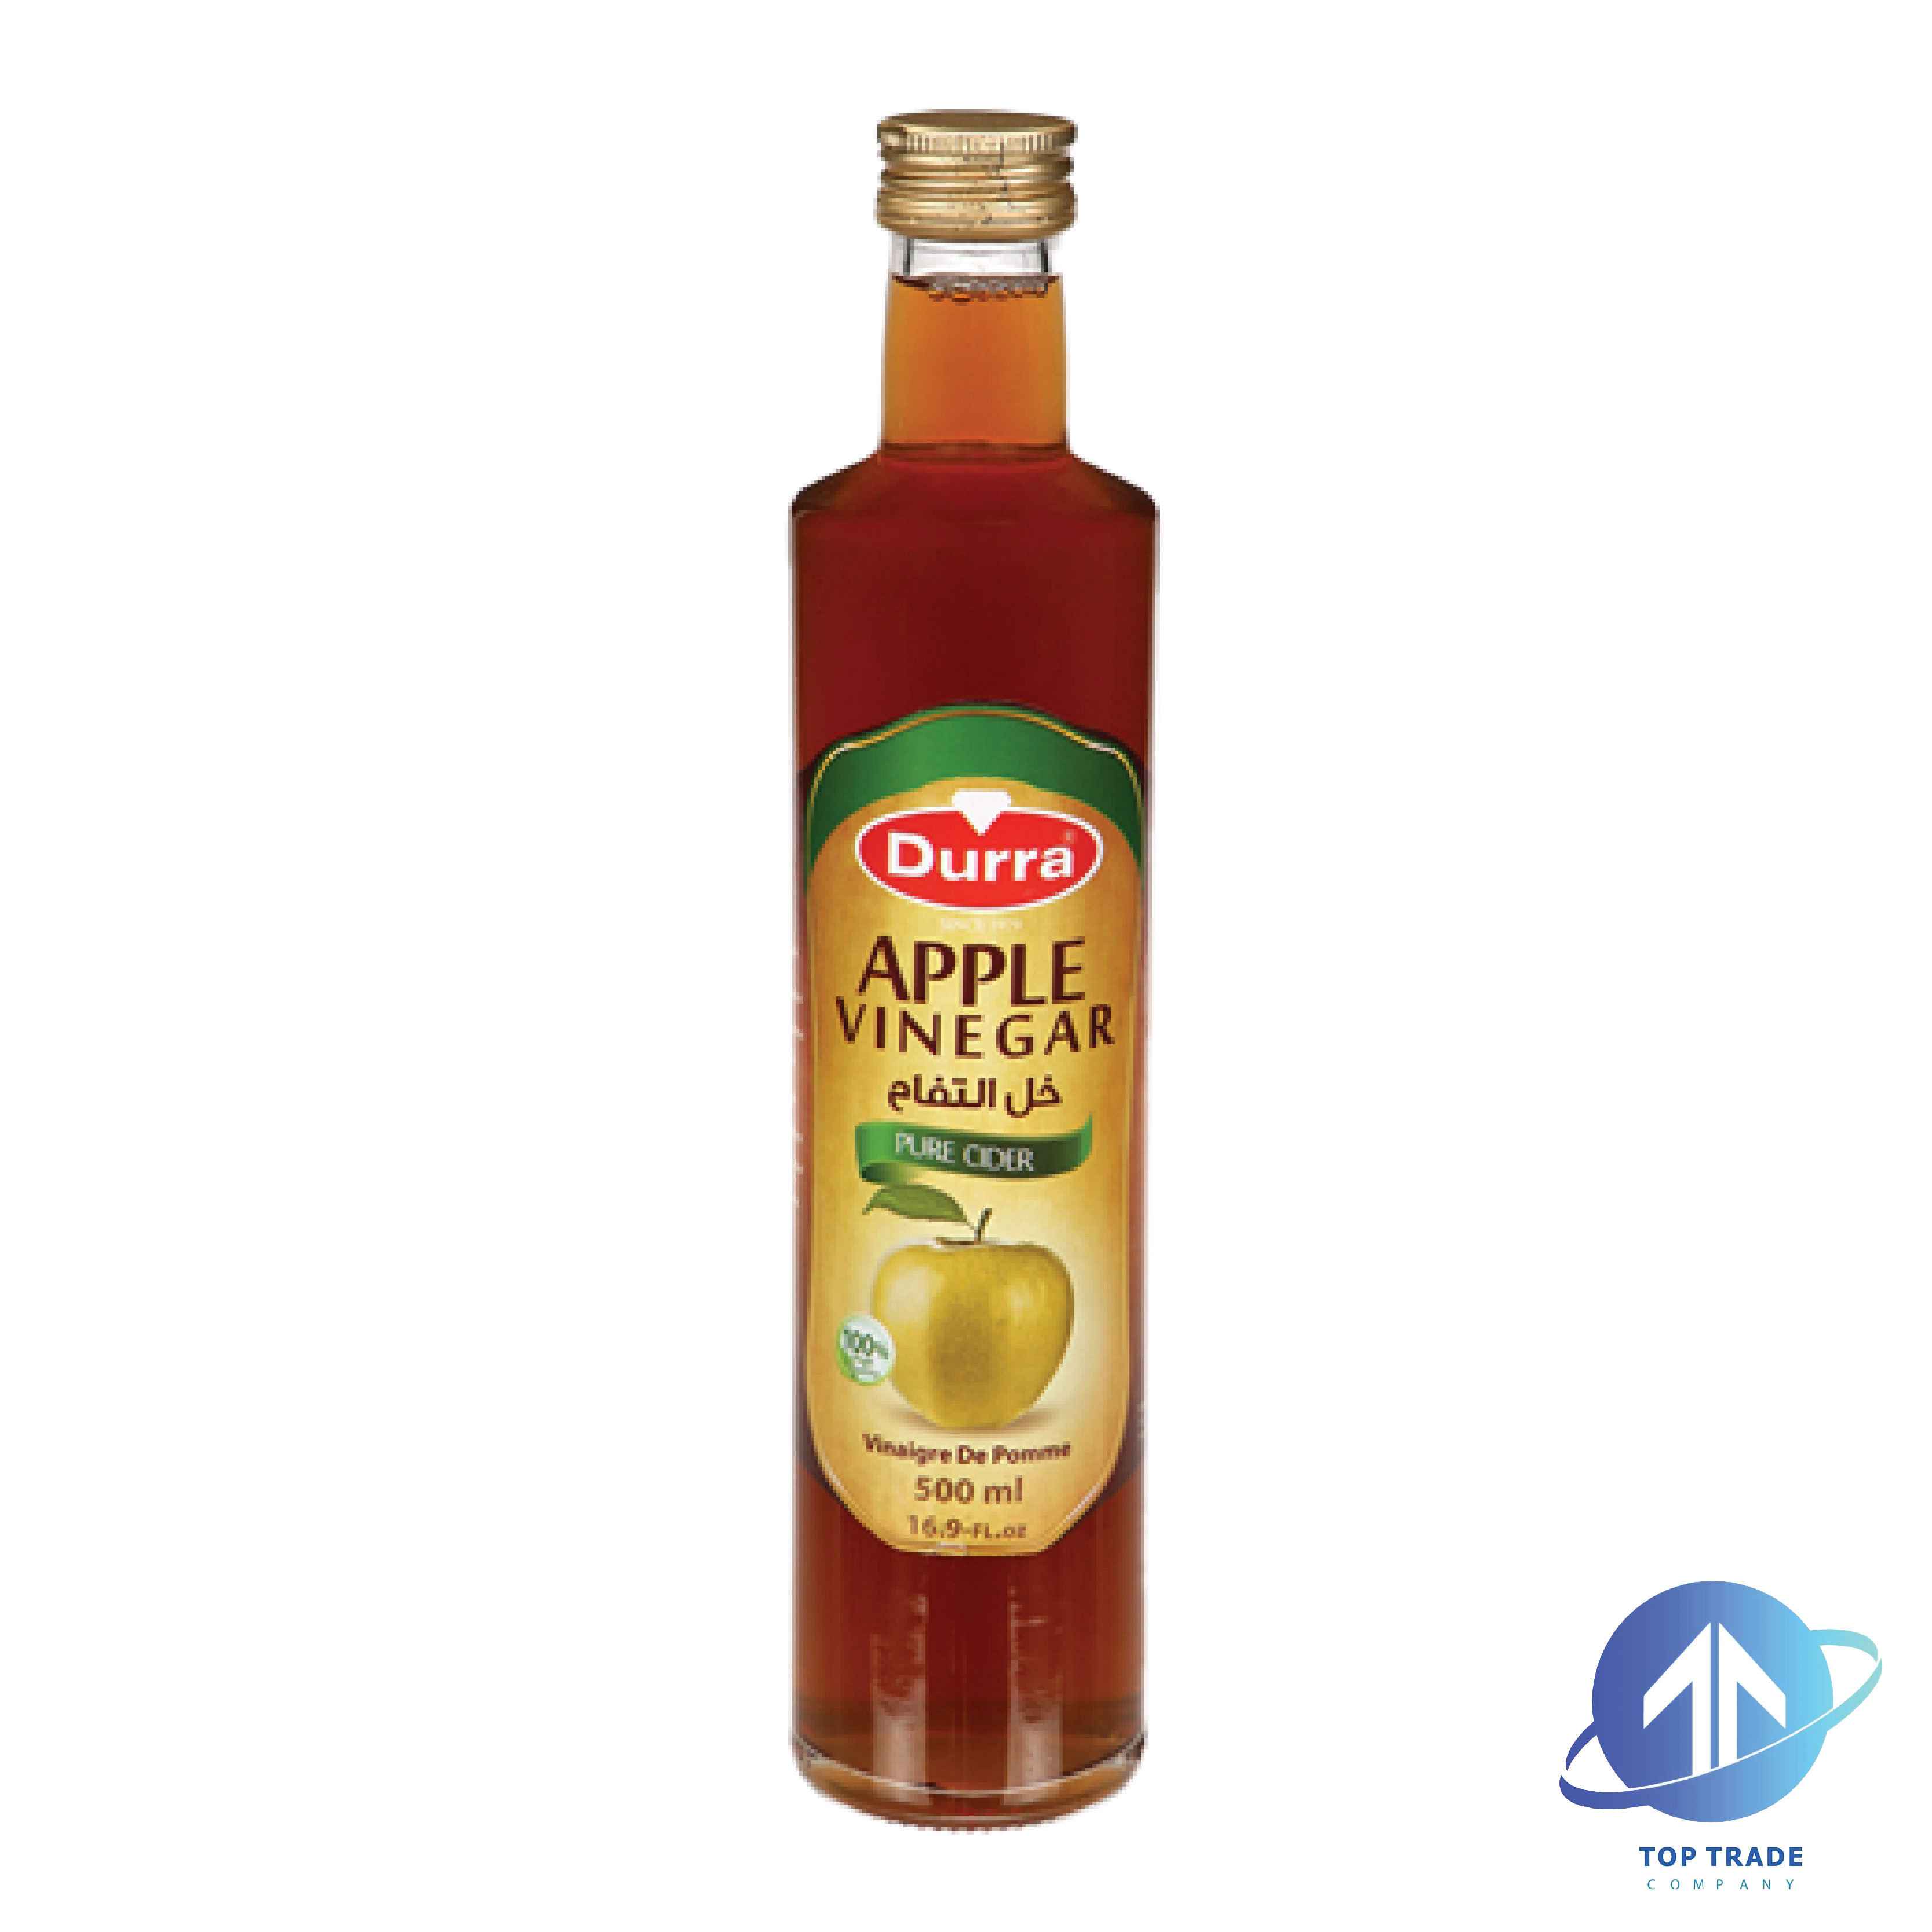 Durra Apple Vinegar 500ML